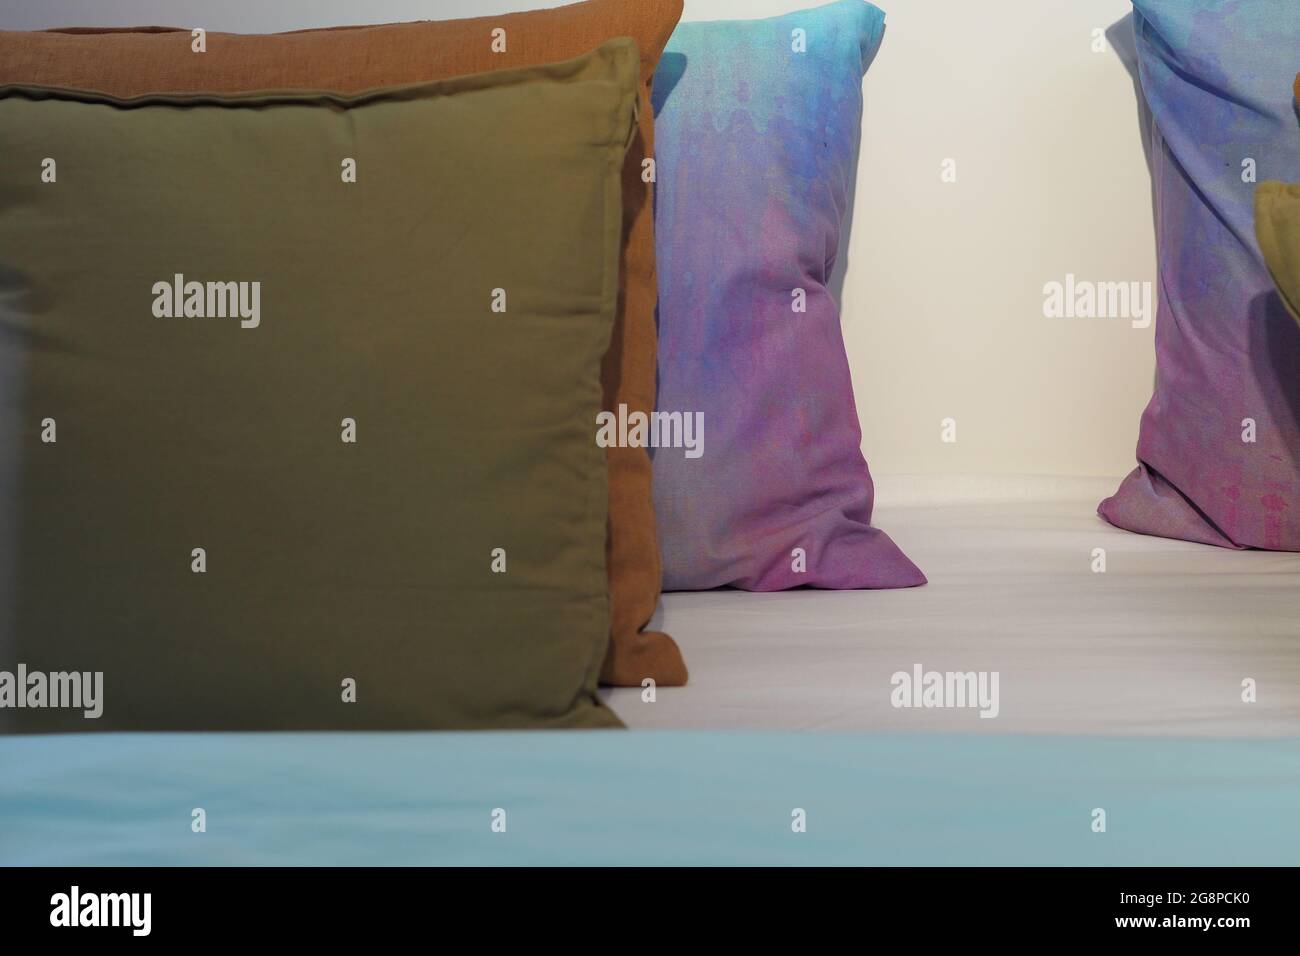 Komfort und Gemütlichkeit zu Hause. Komfortable und schöne Kissen in  verschiedenen Farben. Hochwertige Fotos Stockfotografie - Alamy